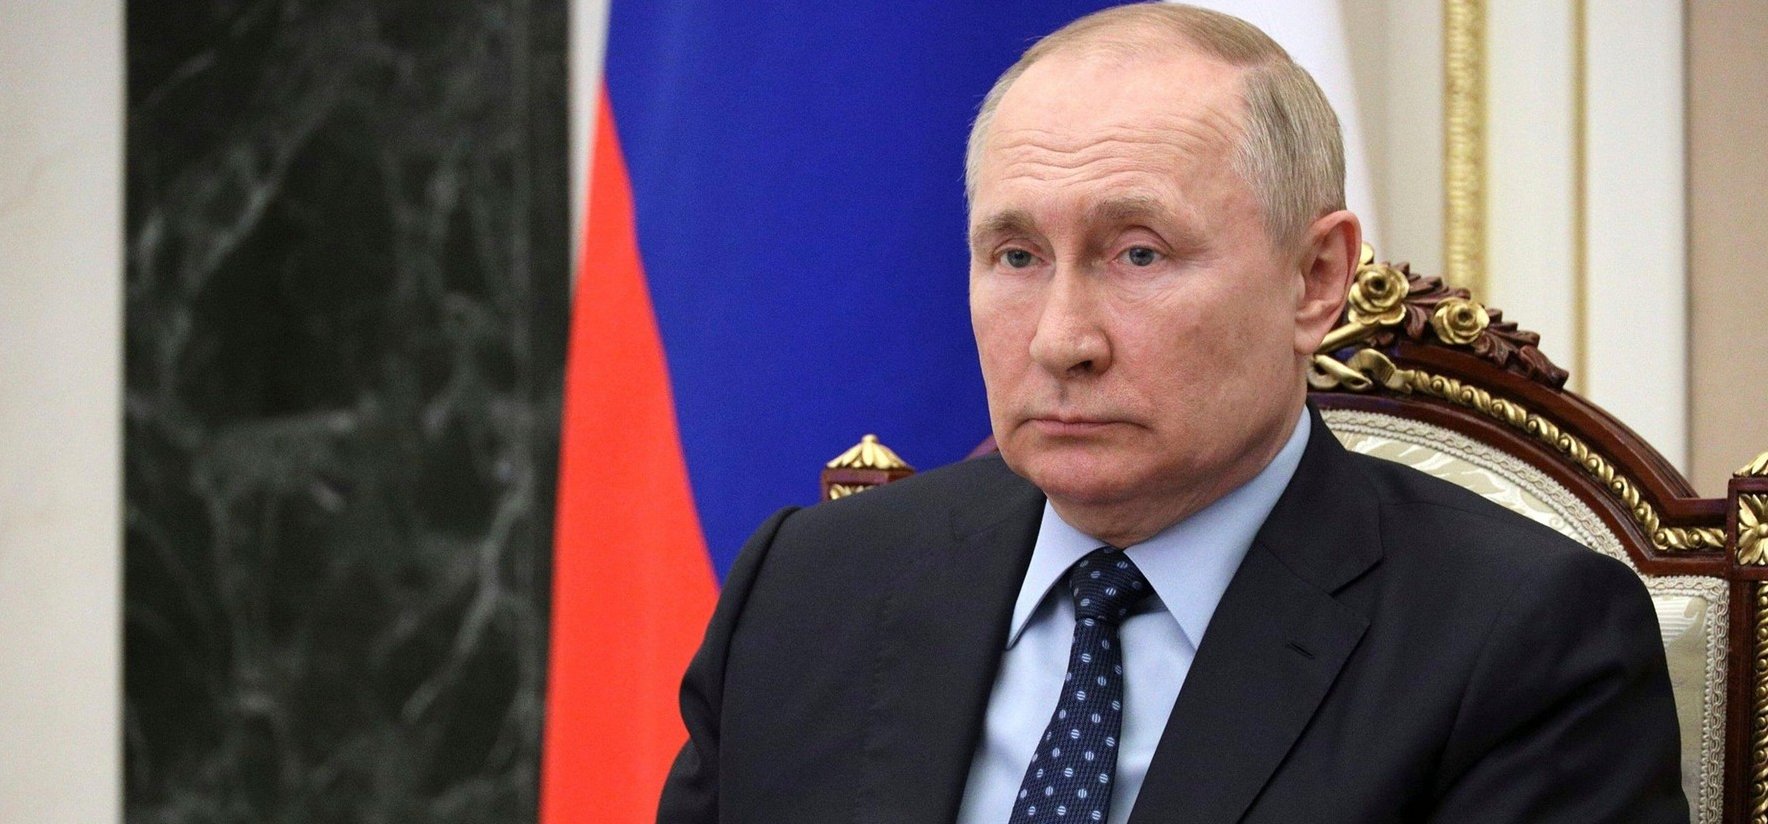 Nagy bajban van Putyin – Ágyba bújt a szeretőjével, aminek lett egy kis következménye